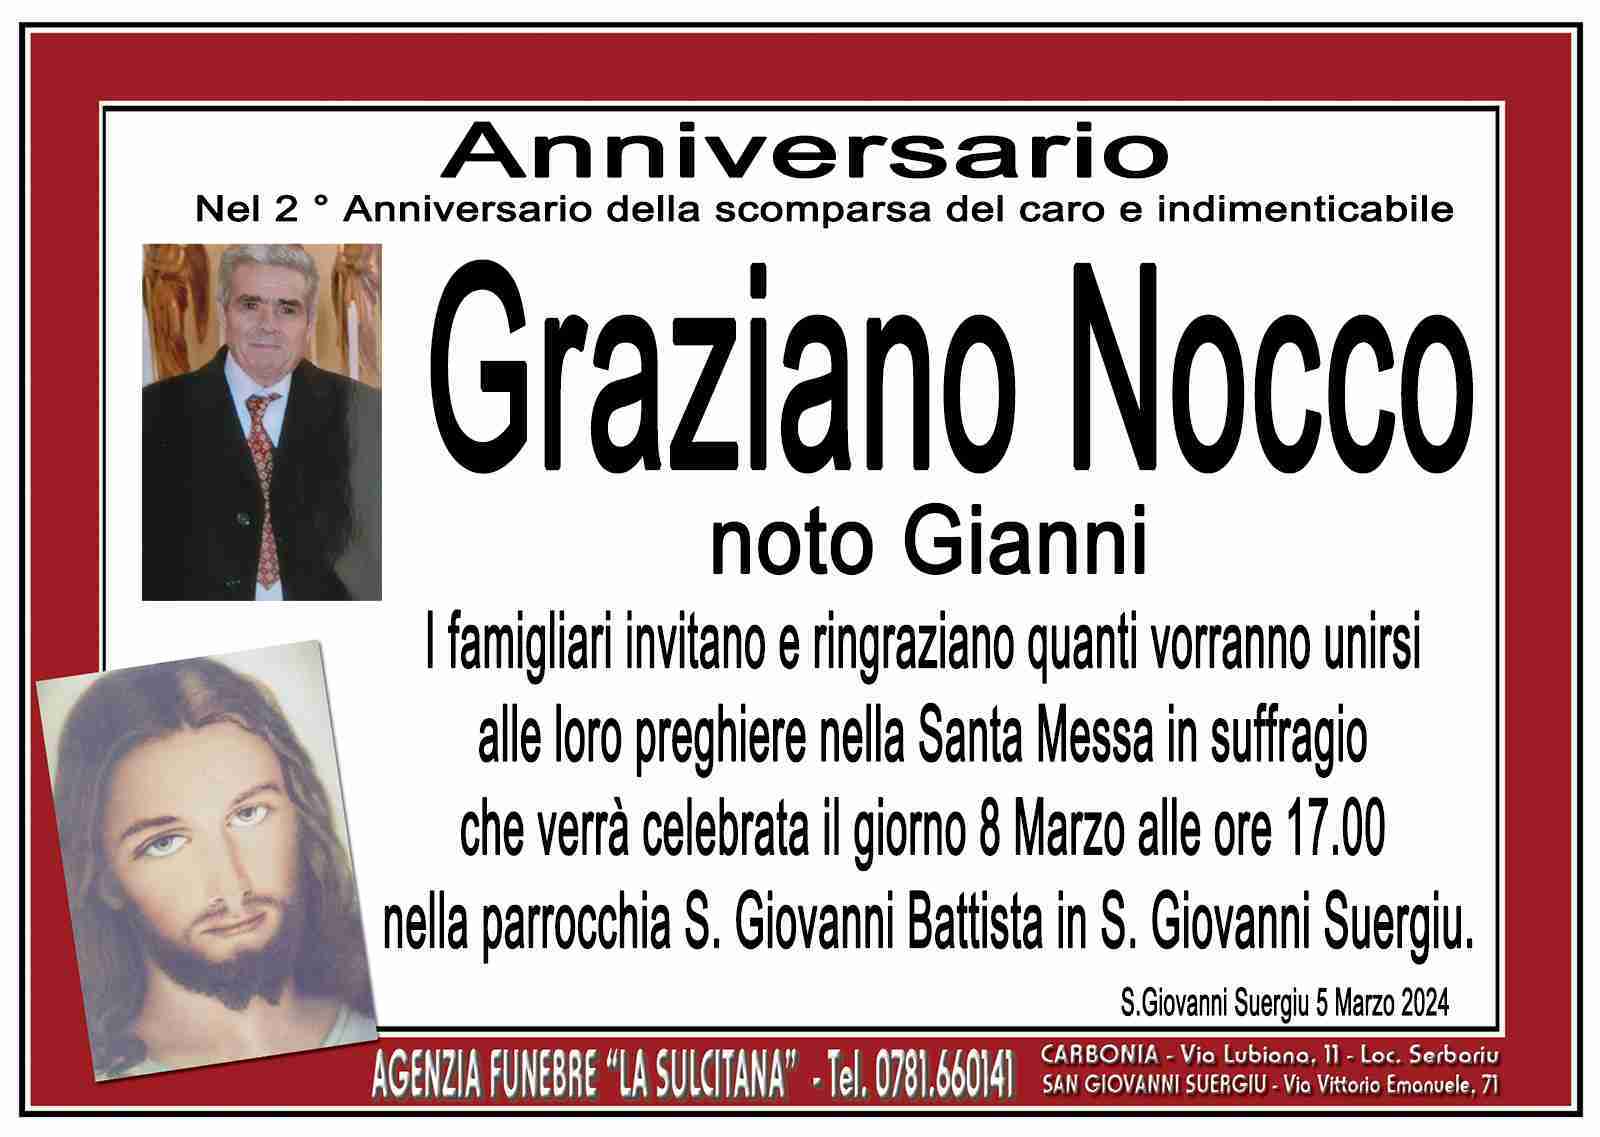 Graziano Nocco